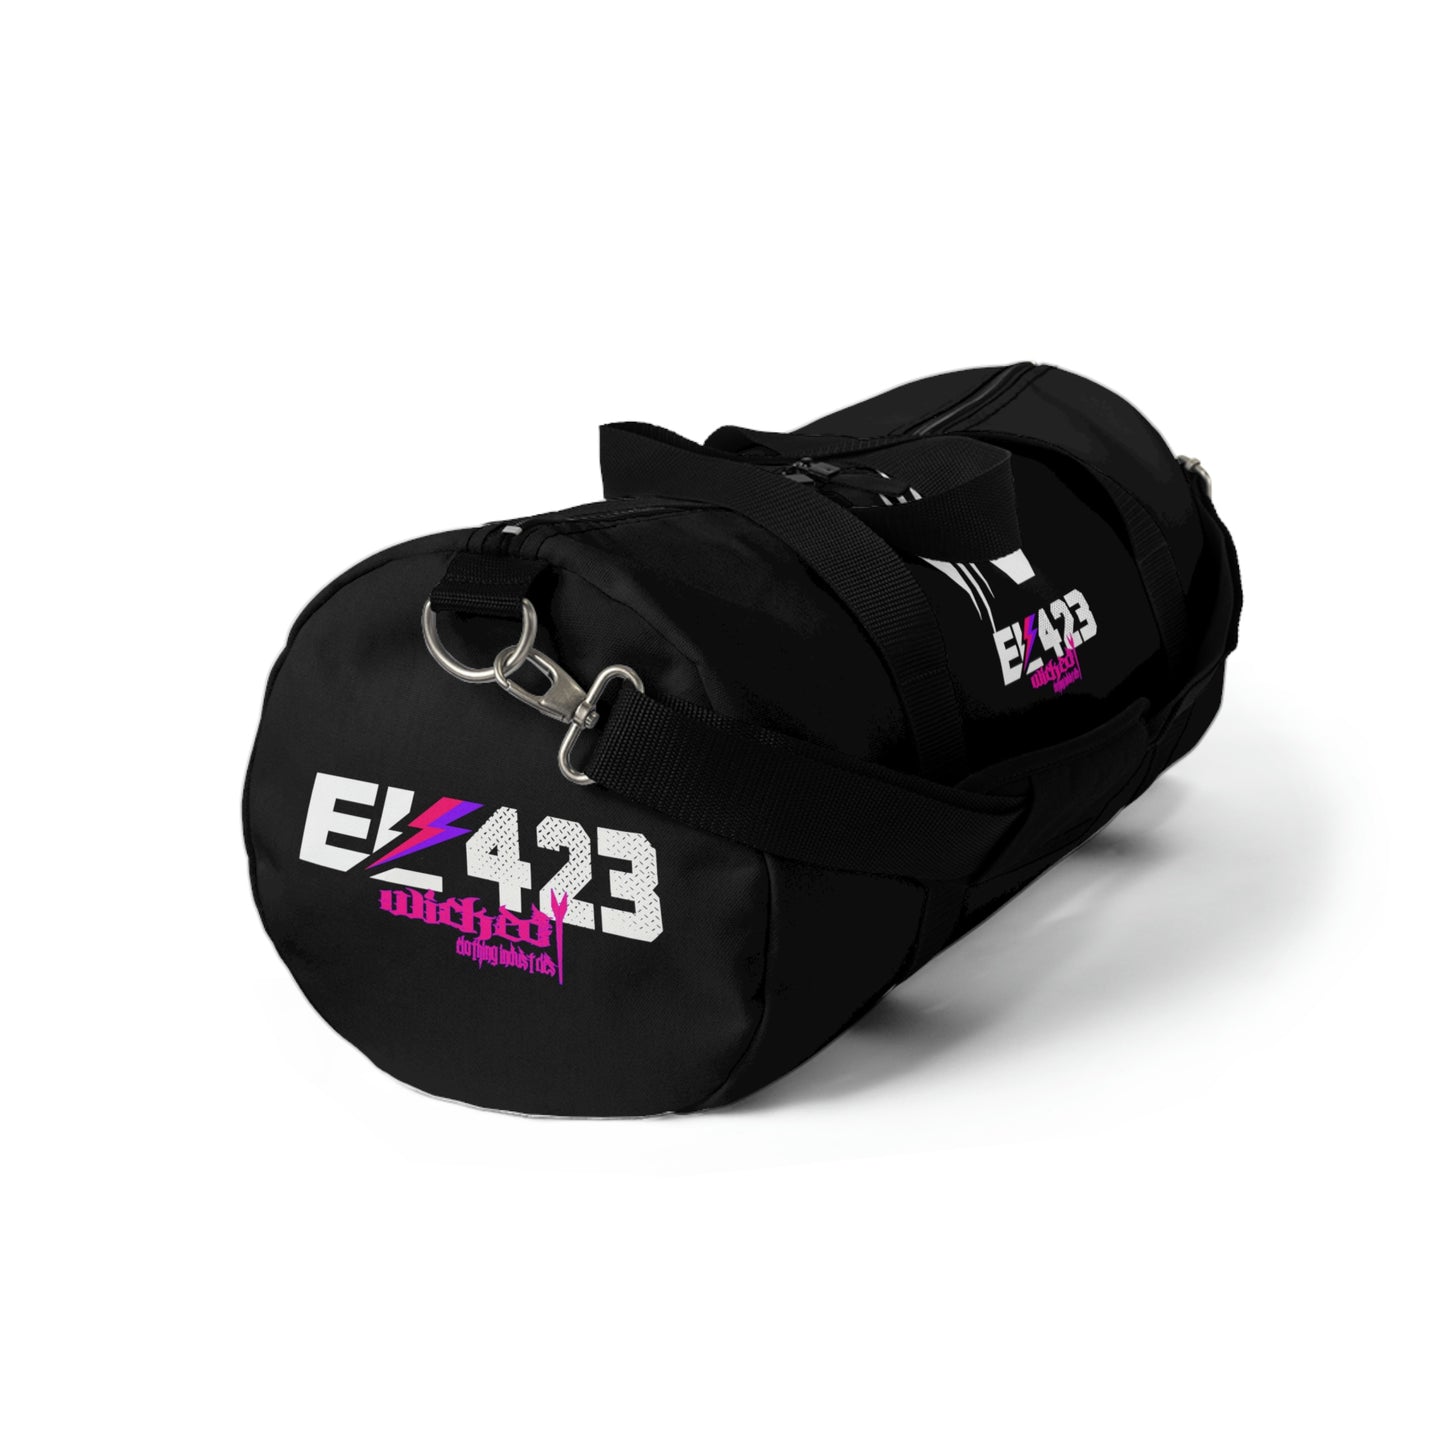 Shockwave EL423/Duffel Bag